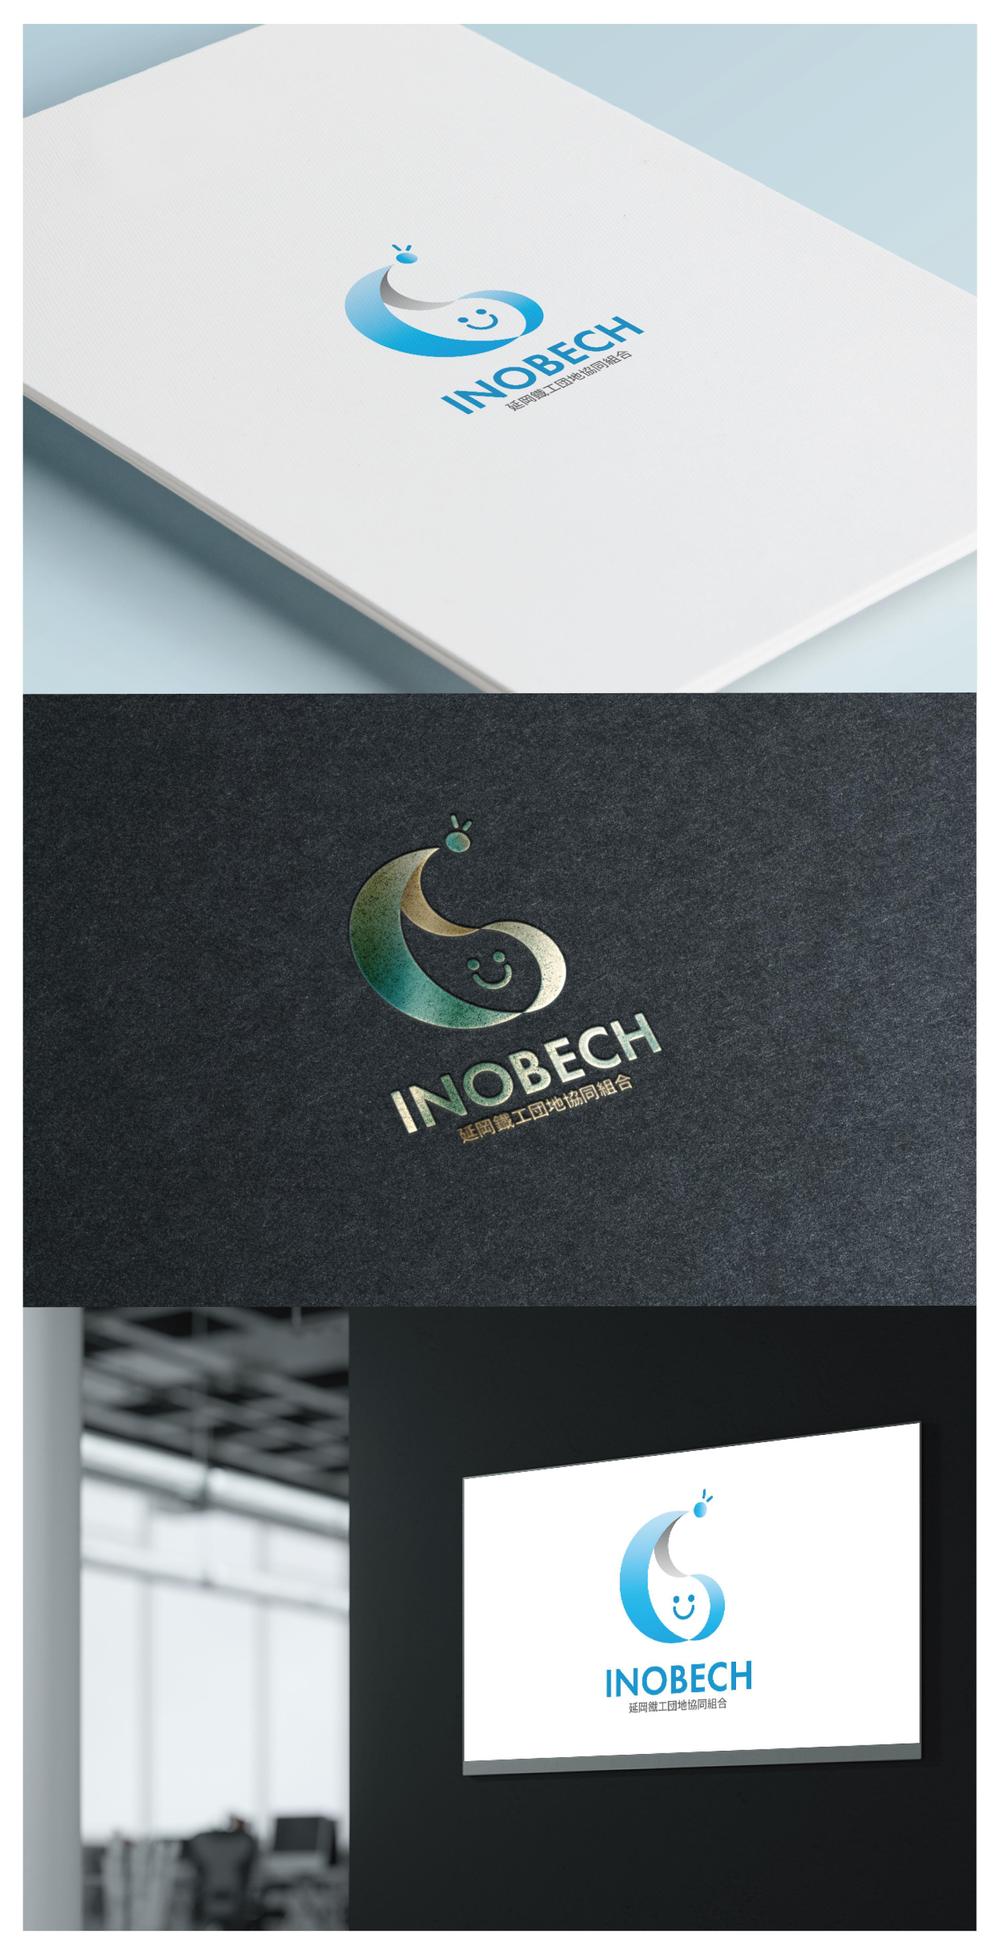 INOBECH_logo01_01.jpg